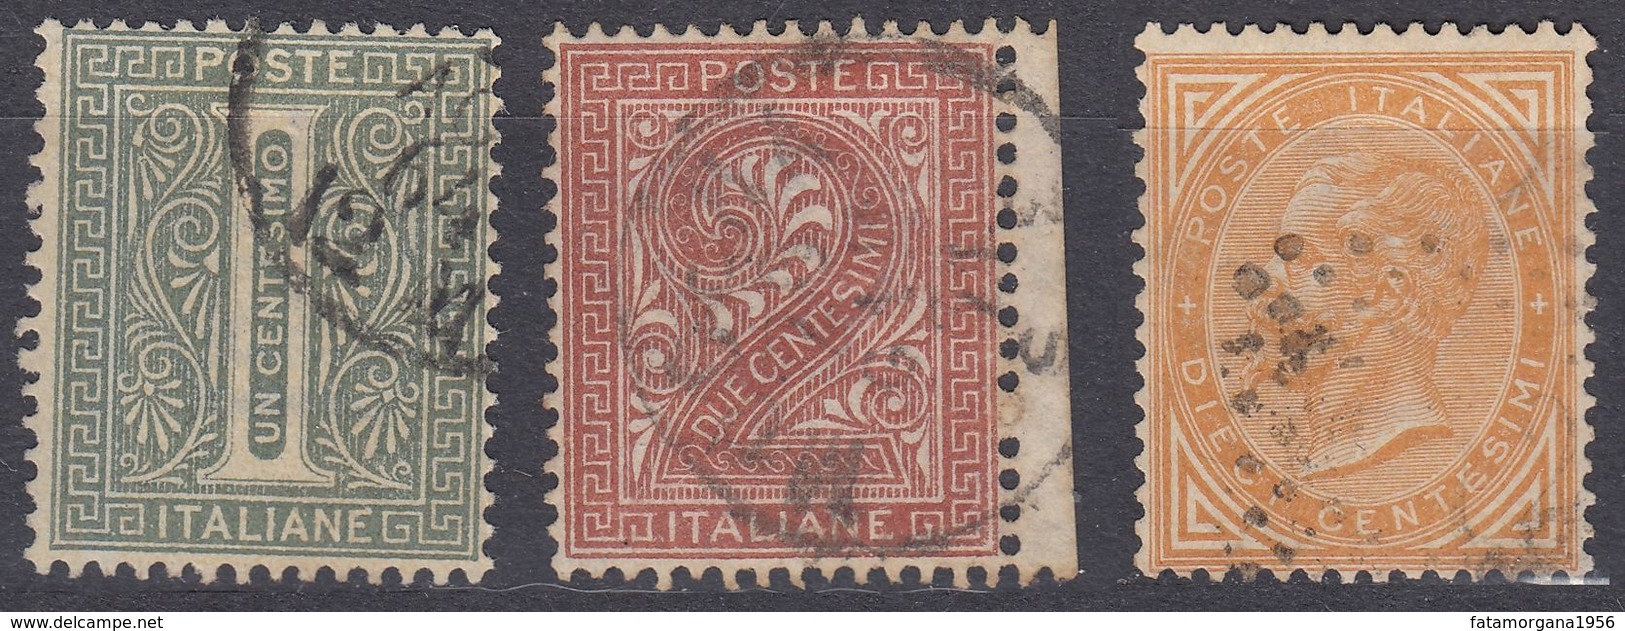 ITALIA - 1863 - Lotto Di Tre Valori Usati: Yvert 12, 13 E 15, Come Da Immagine. - Oblitérés